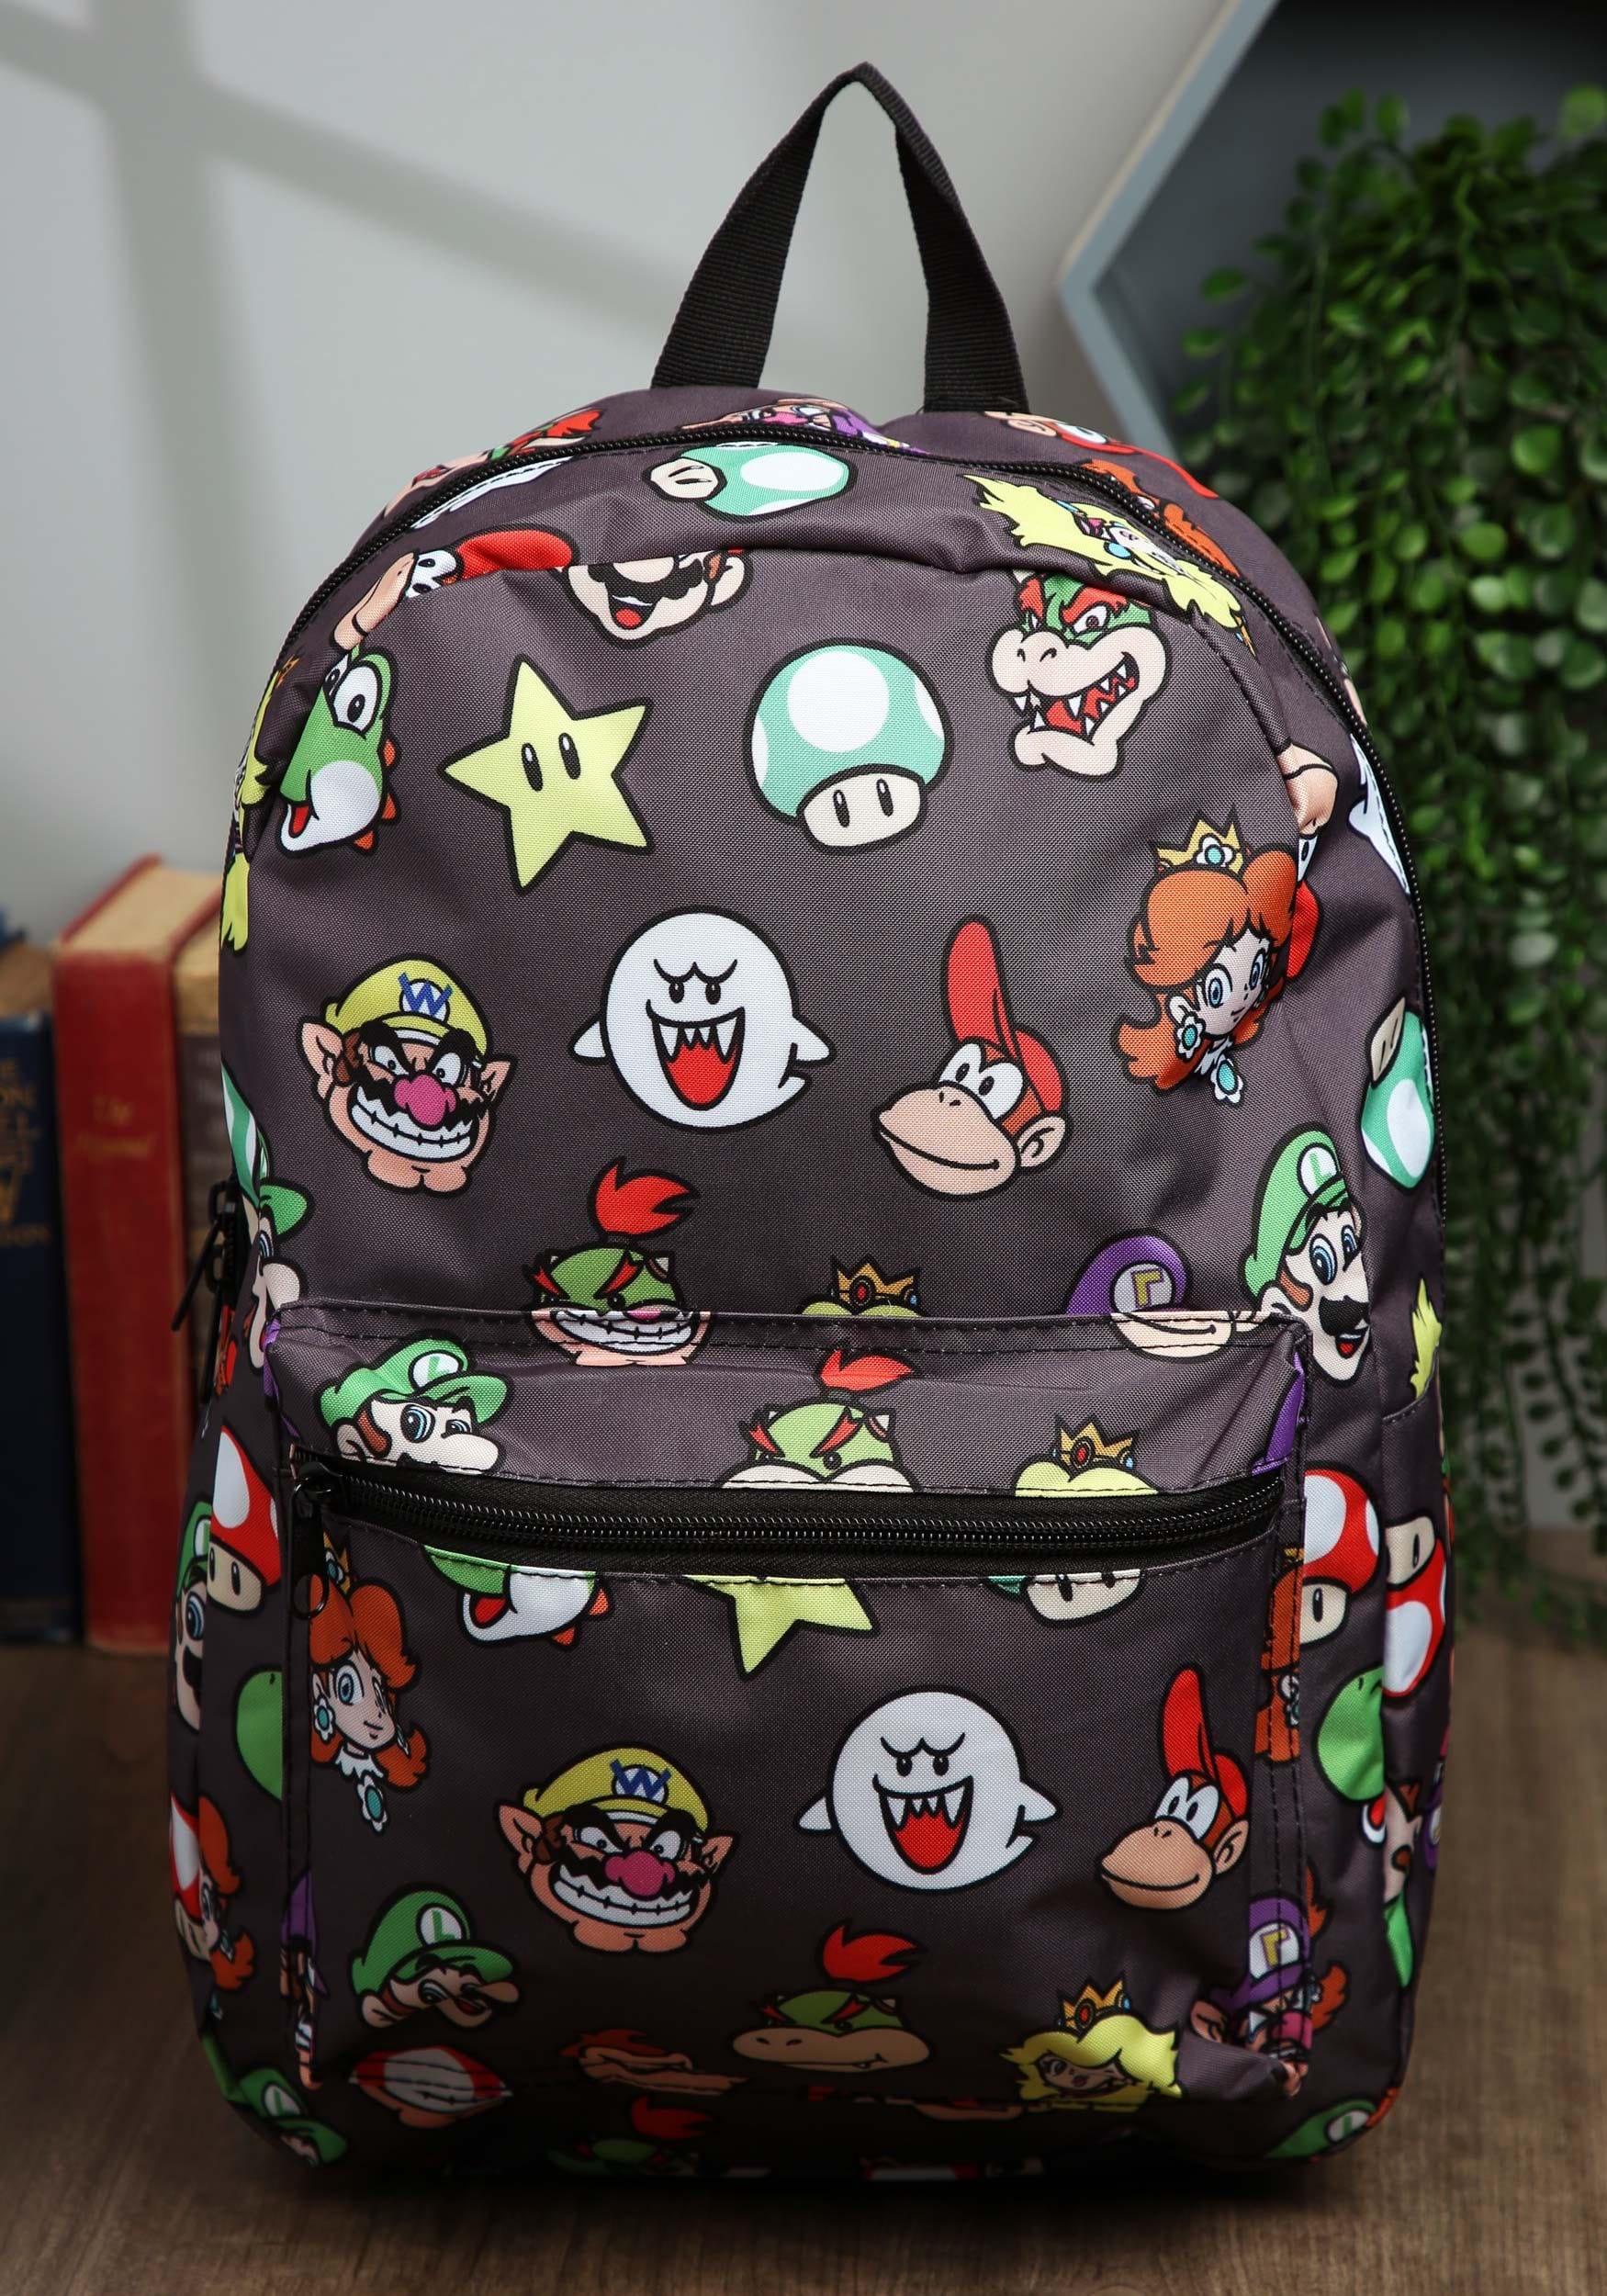 Uganda En respuesta a la comunidad Super Mario Brothers Backpack with Character Heads Pattern | Fandom Shop